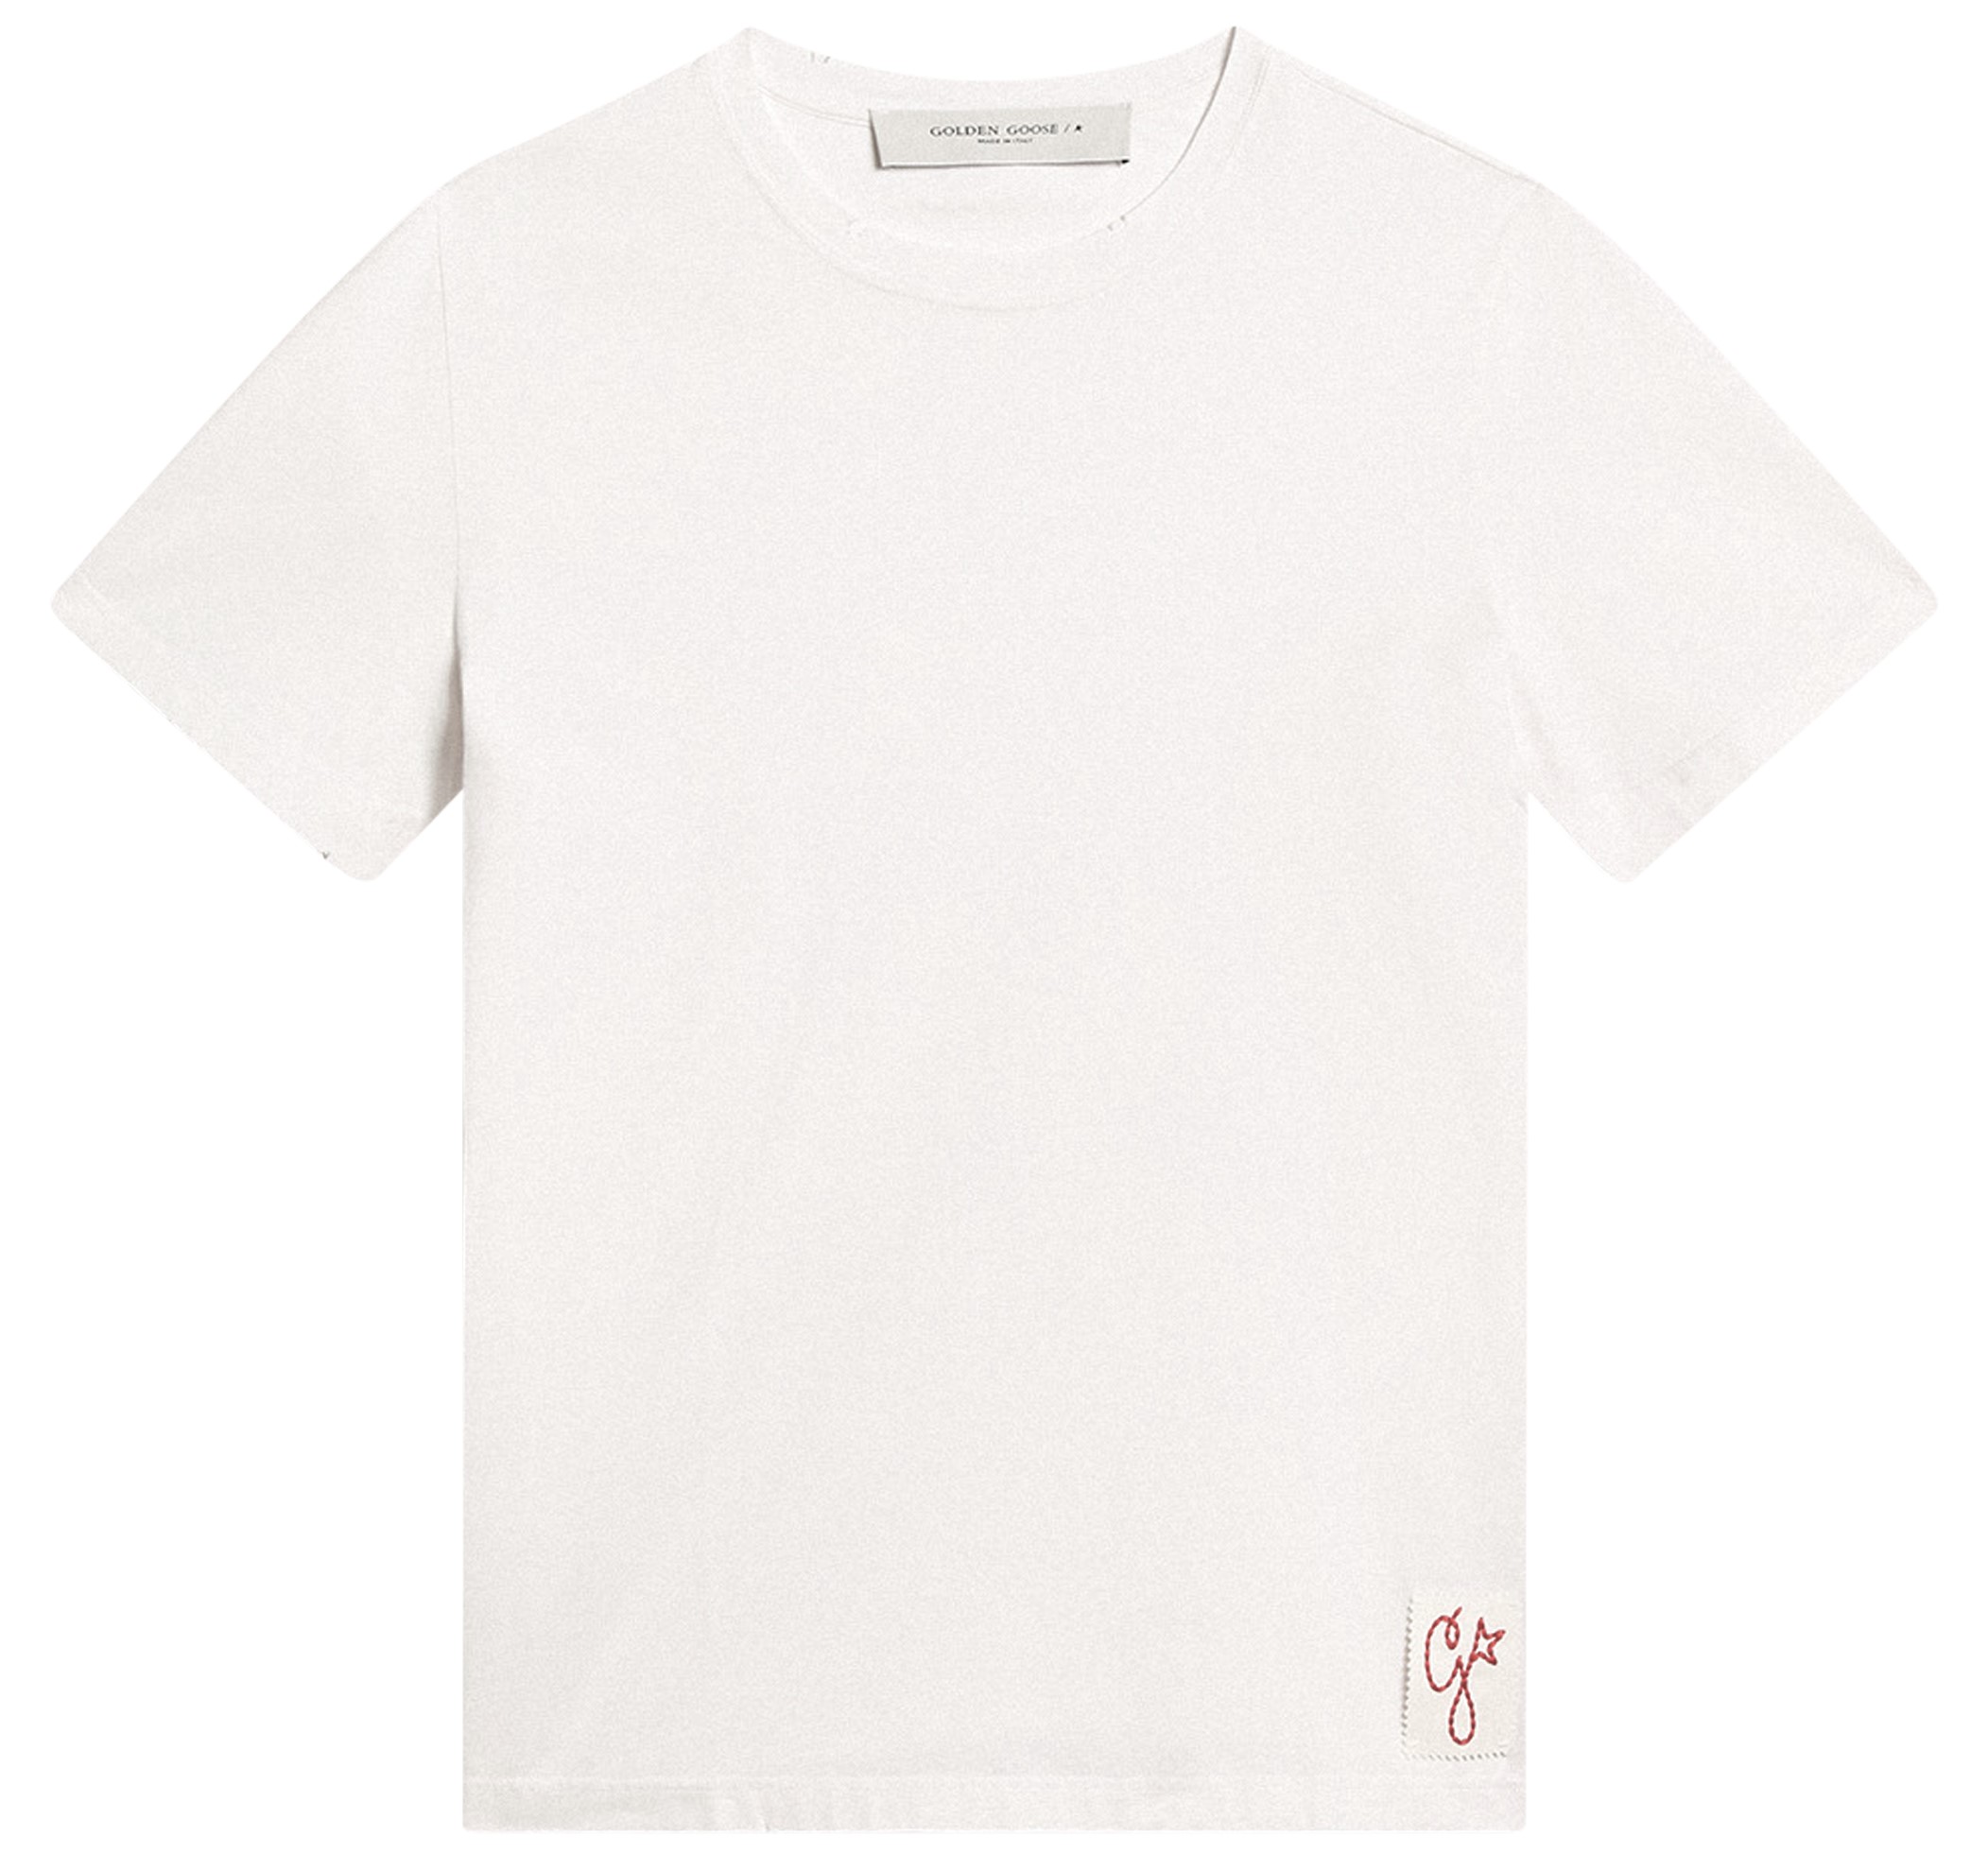 GOLDEN GOOSE Regular T-Shirt in Vintage White S